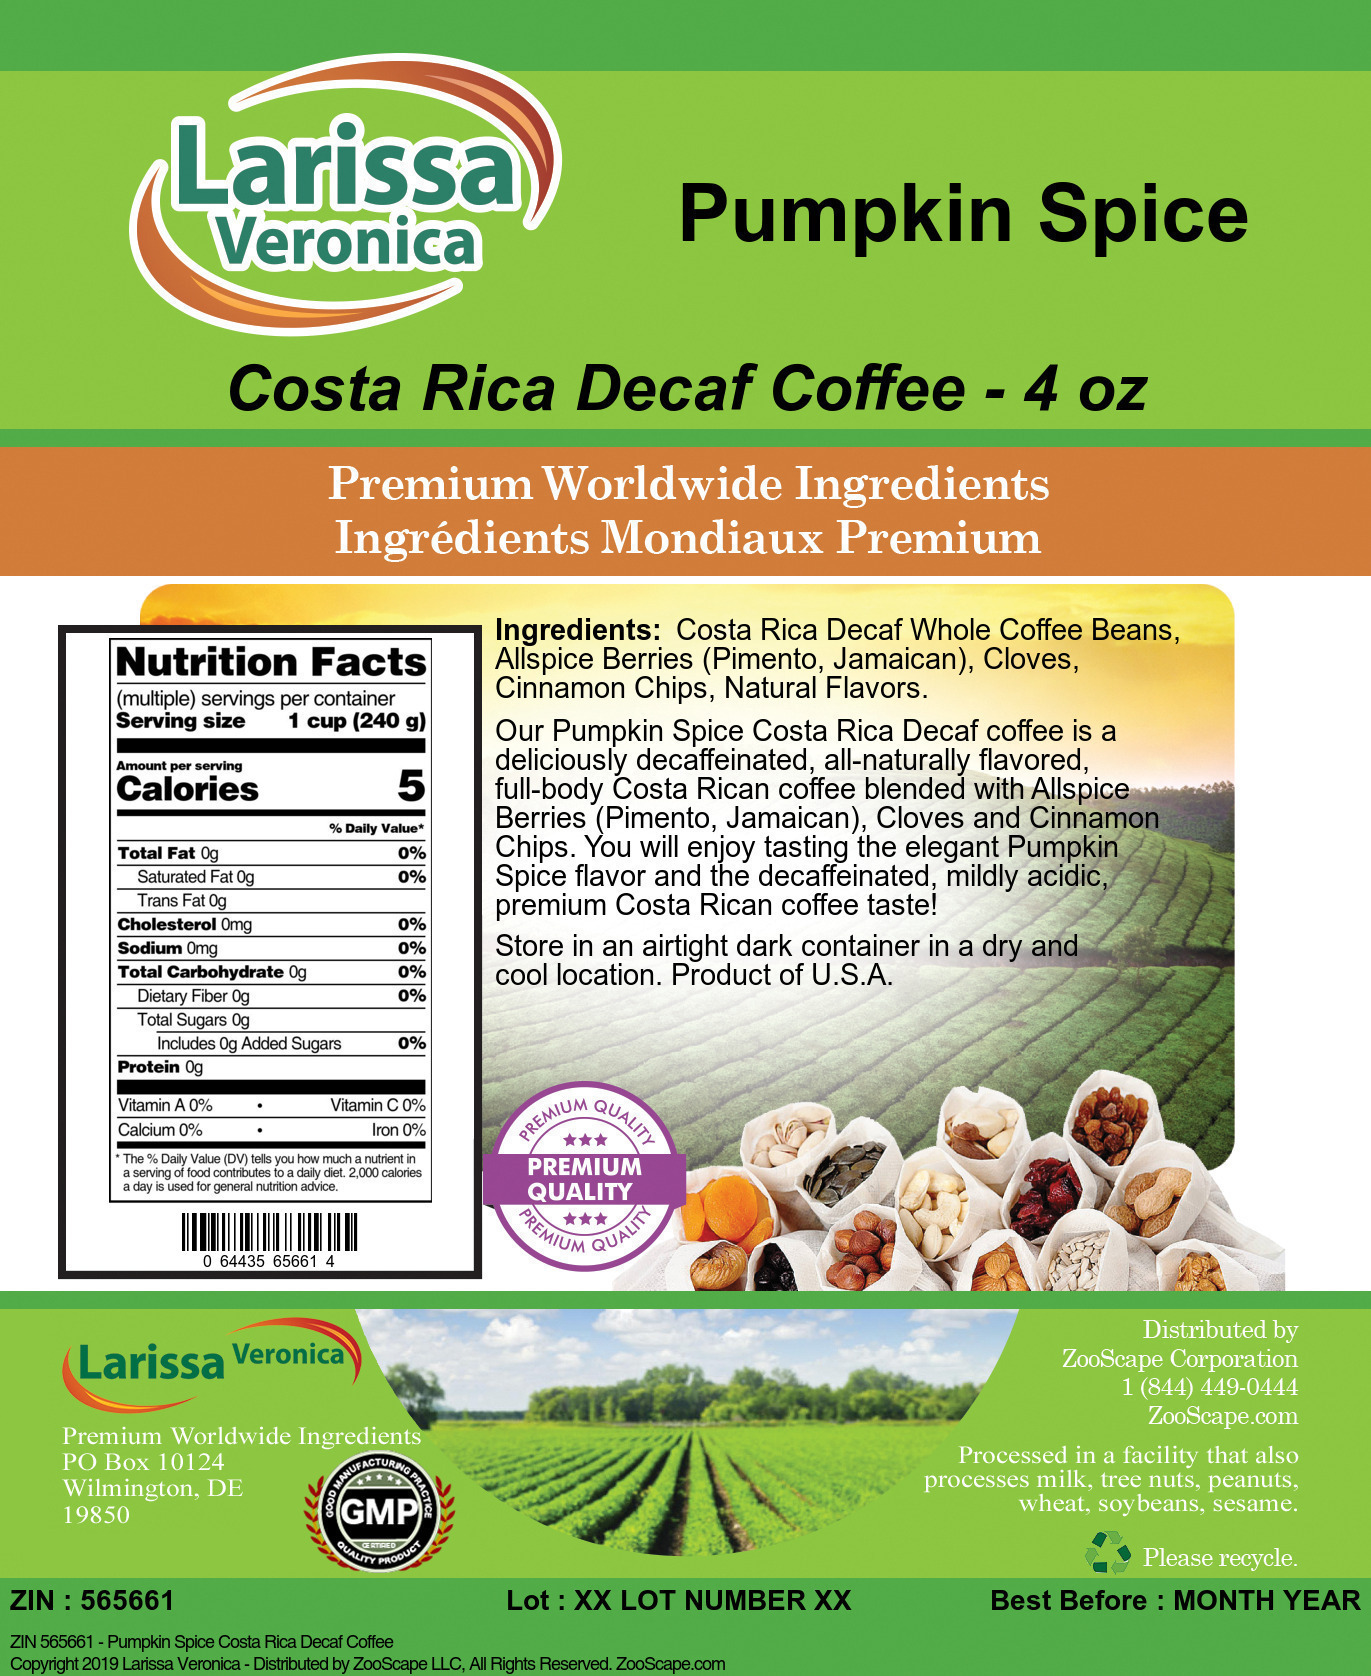 Pumpkin Spice Costa Rica Decaf Coffee - Label